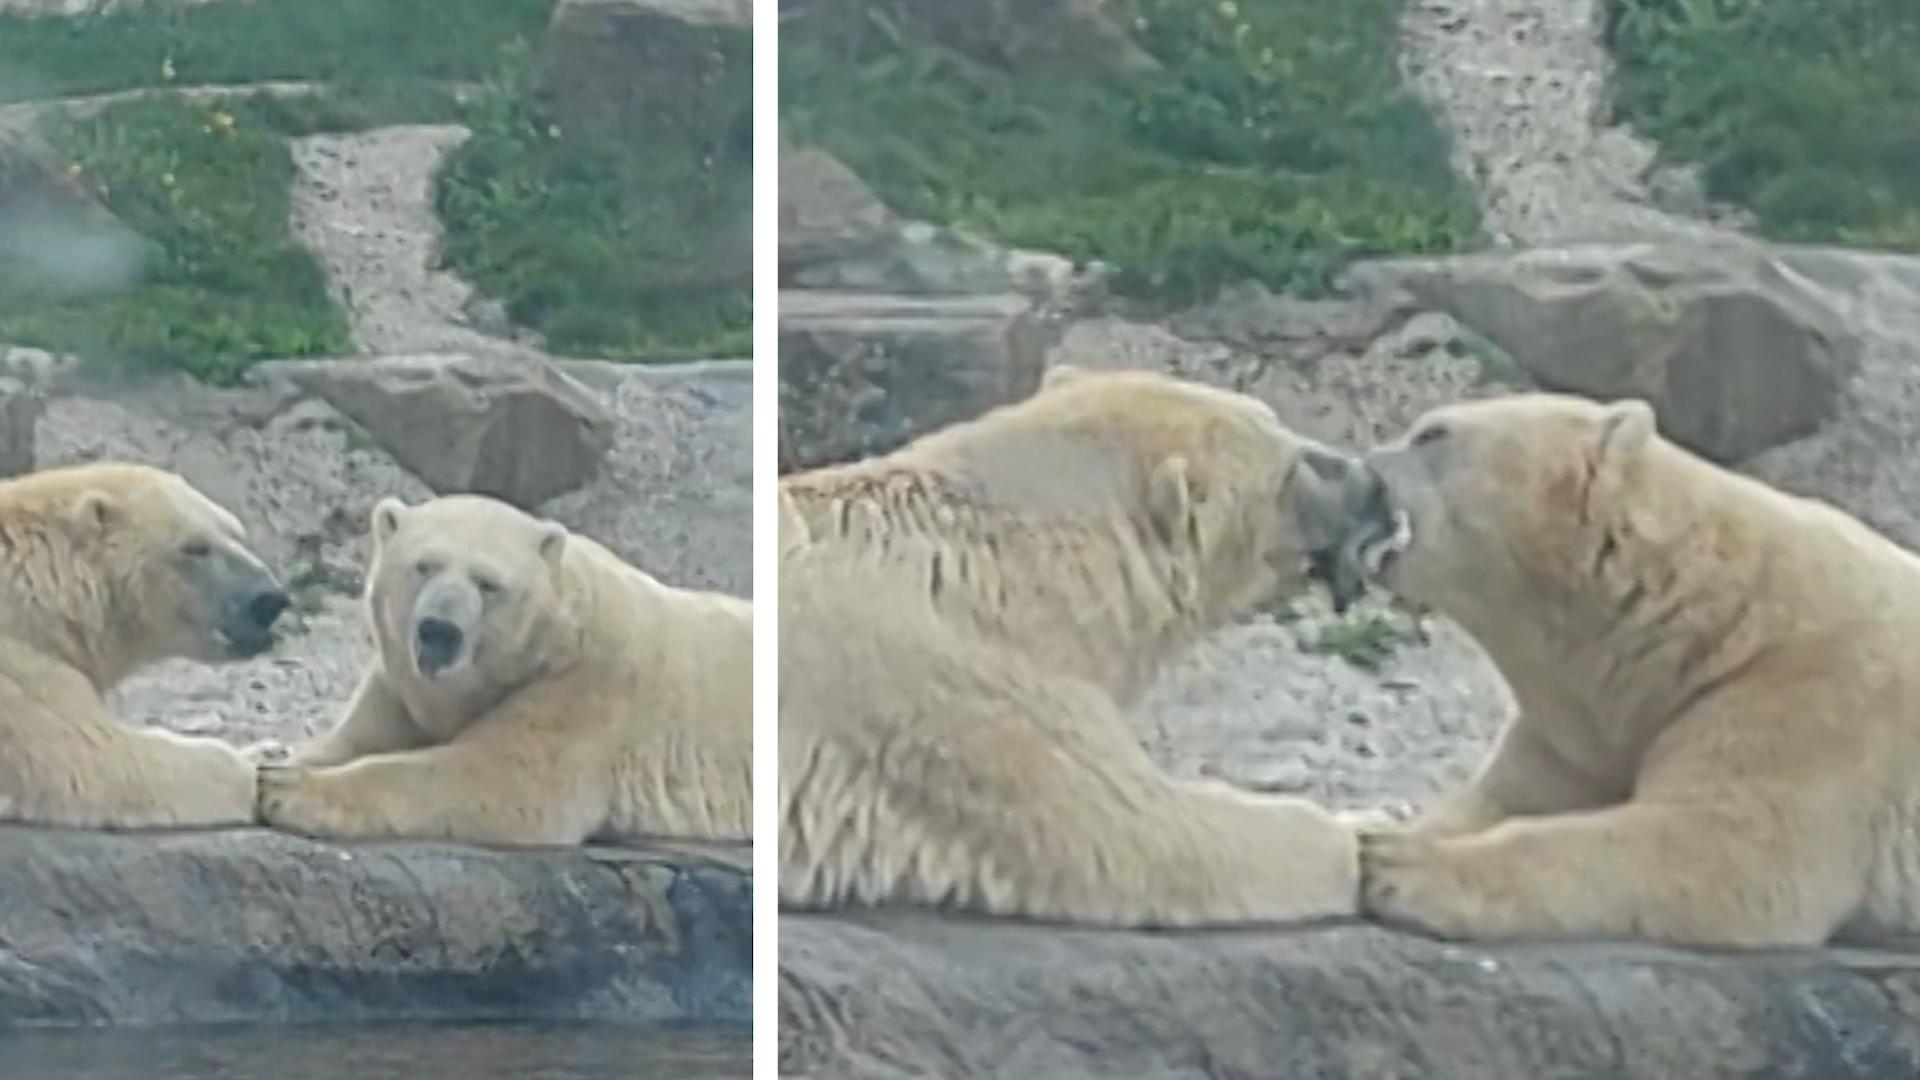 Bussel-Bären bieten wilde Schlabber-Show in Zoo Touristen wollen sie züngeln sehen!